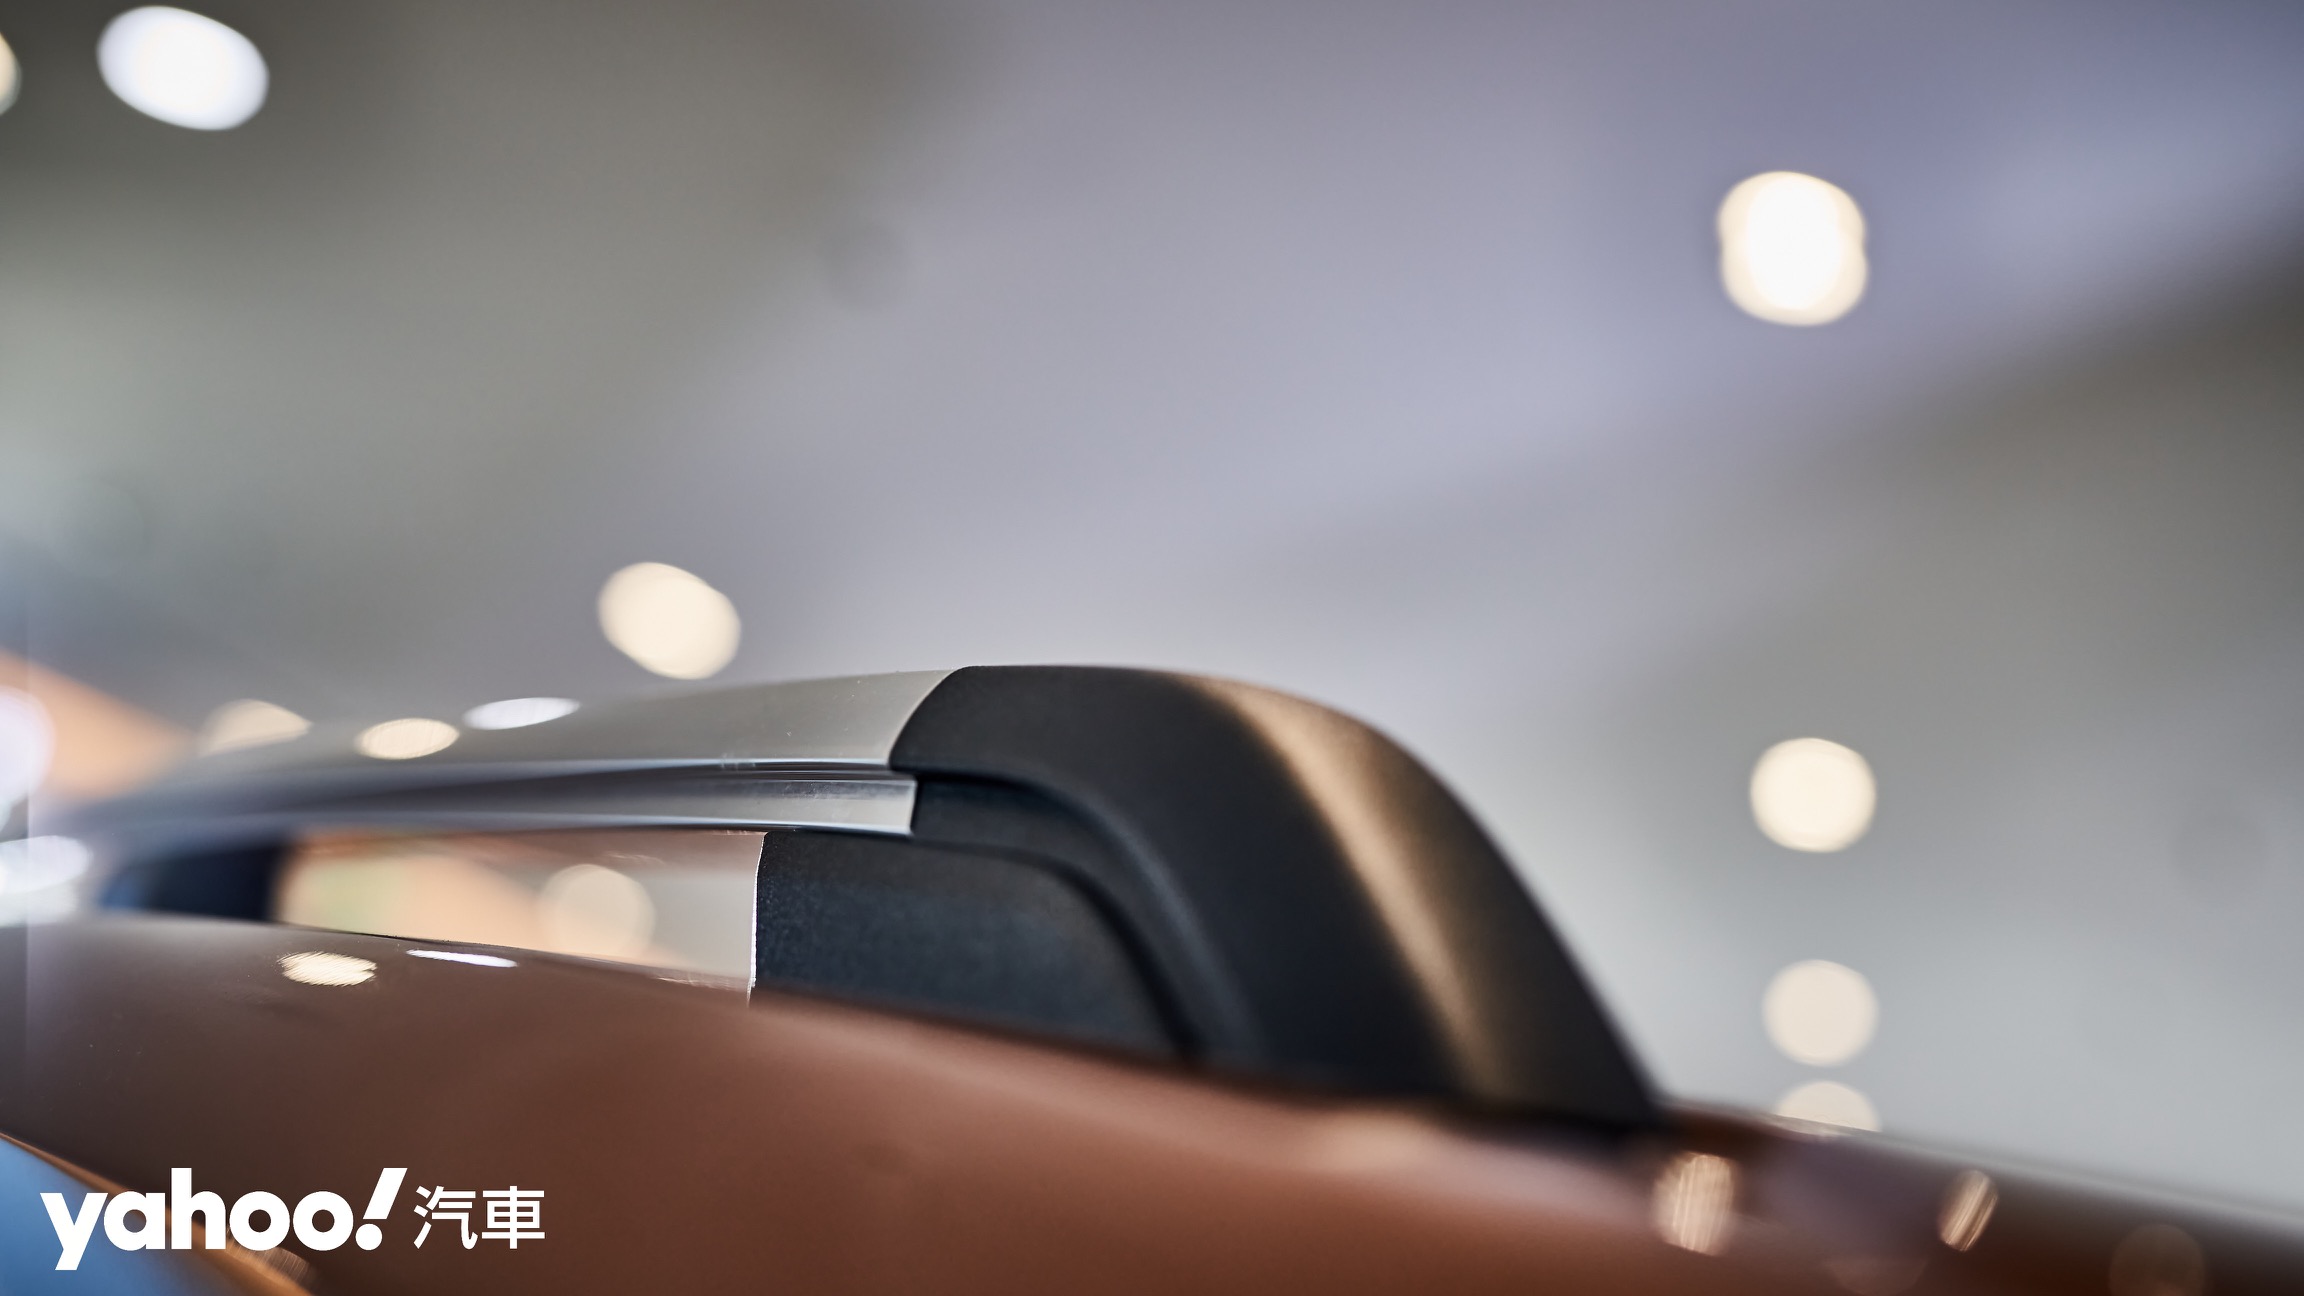 銀色車頂架呼應車身鍍鉻飾條並有著更優雅秀氣的風格。